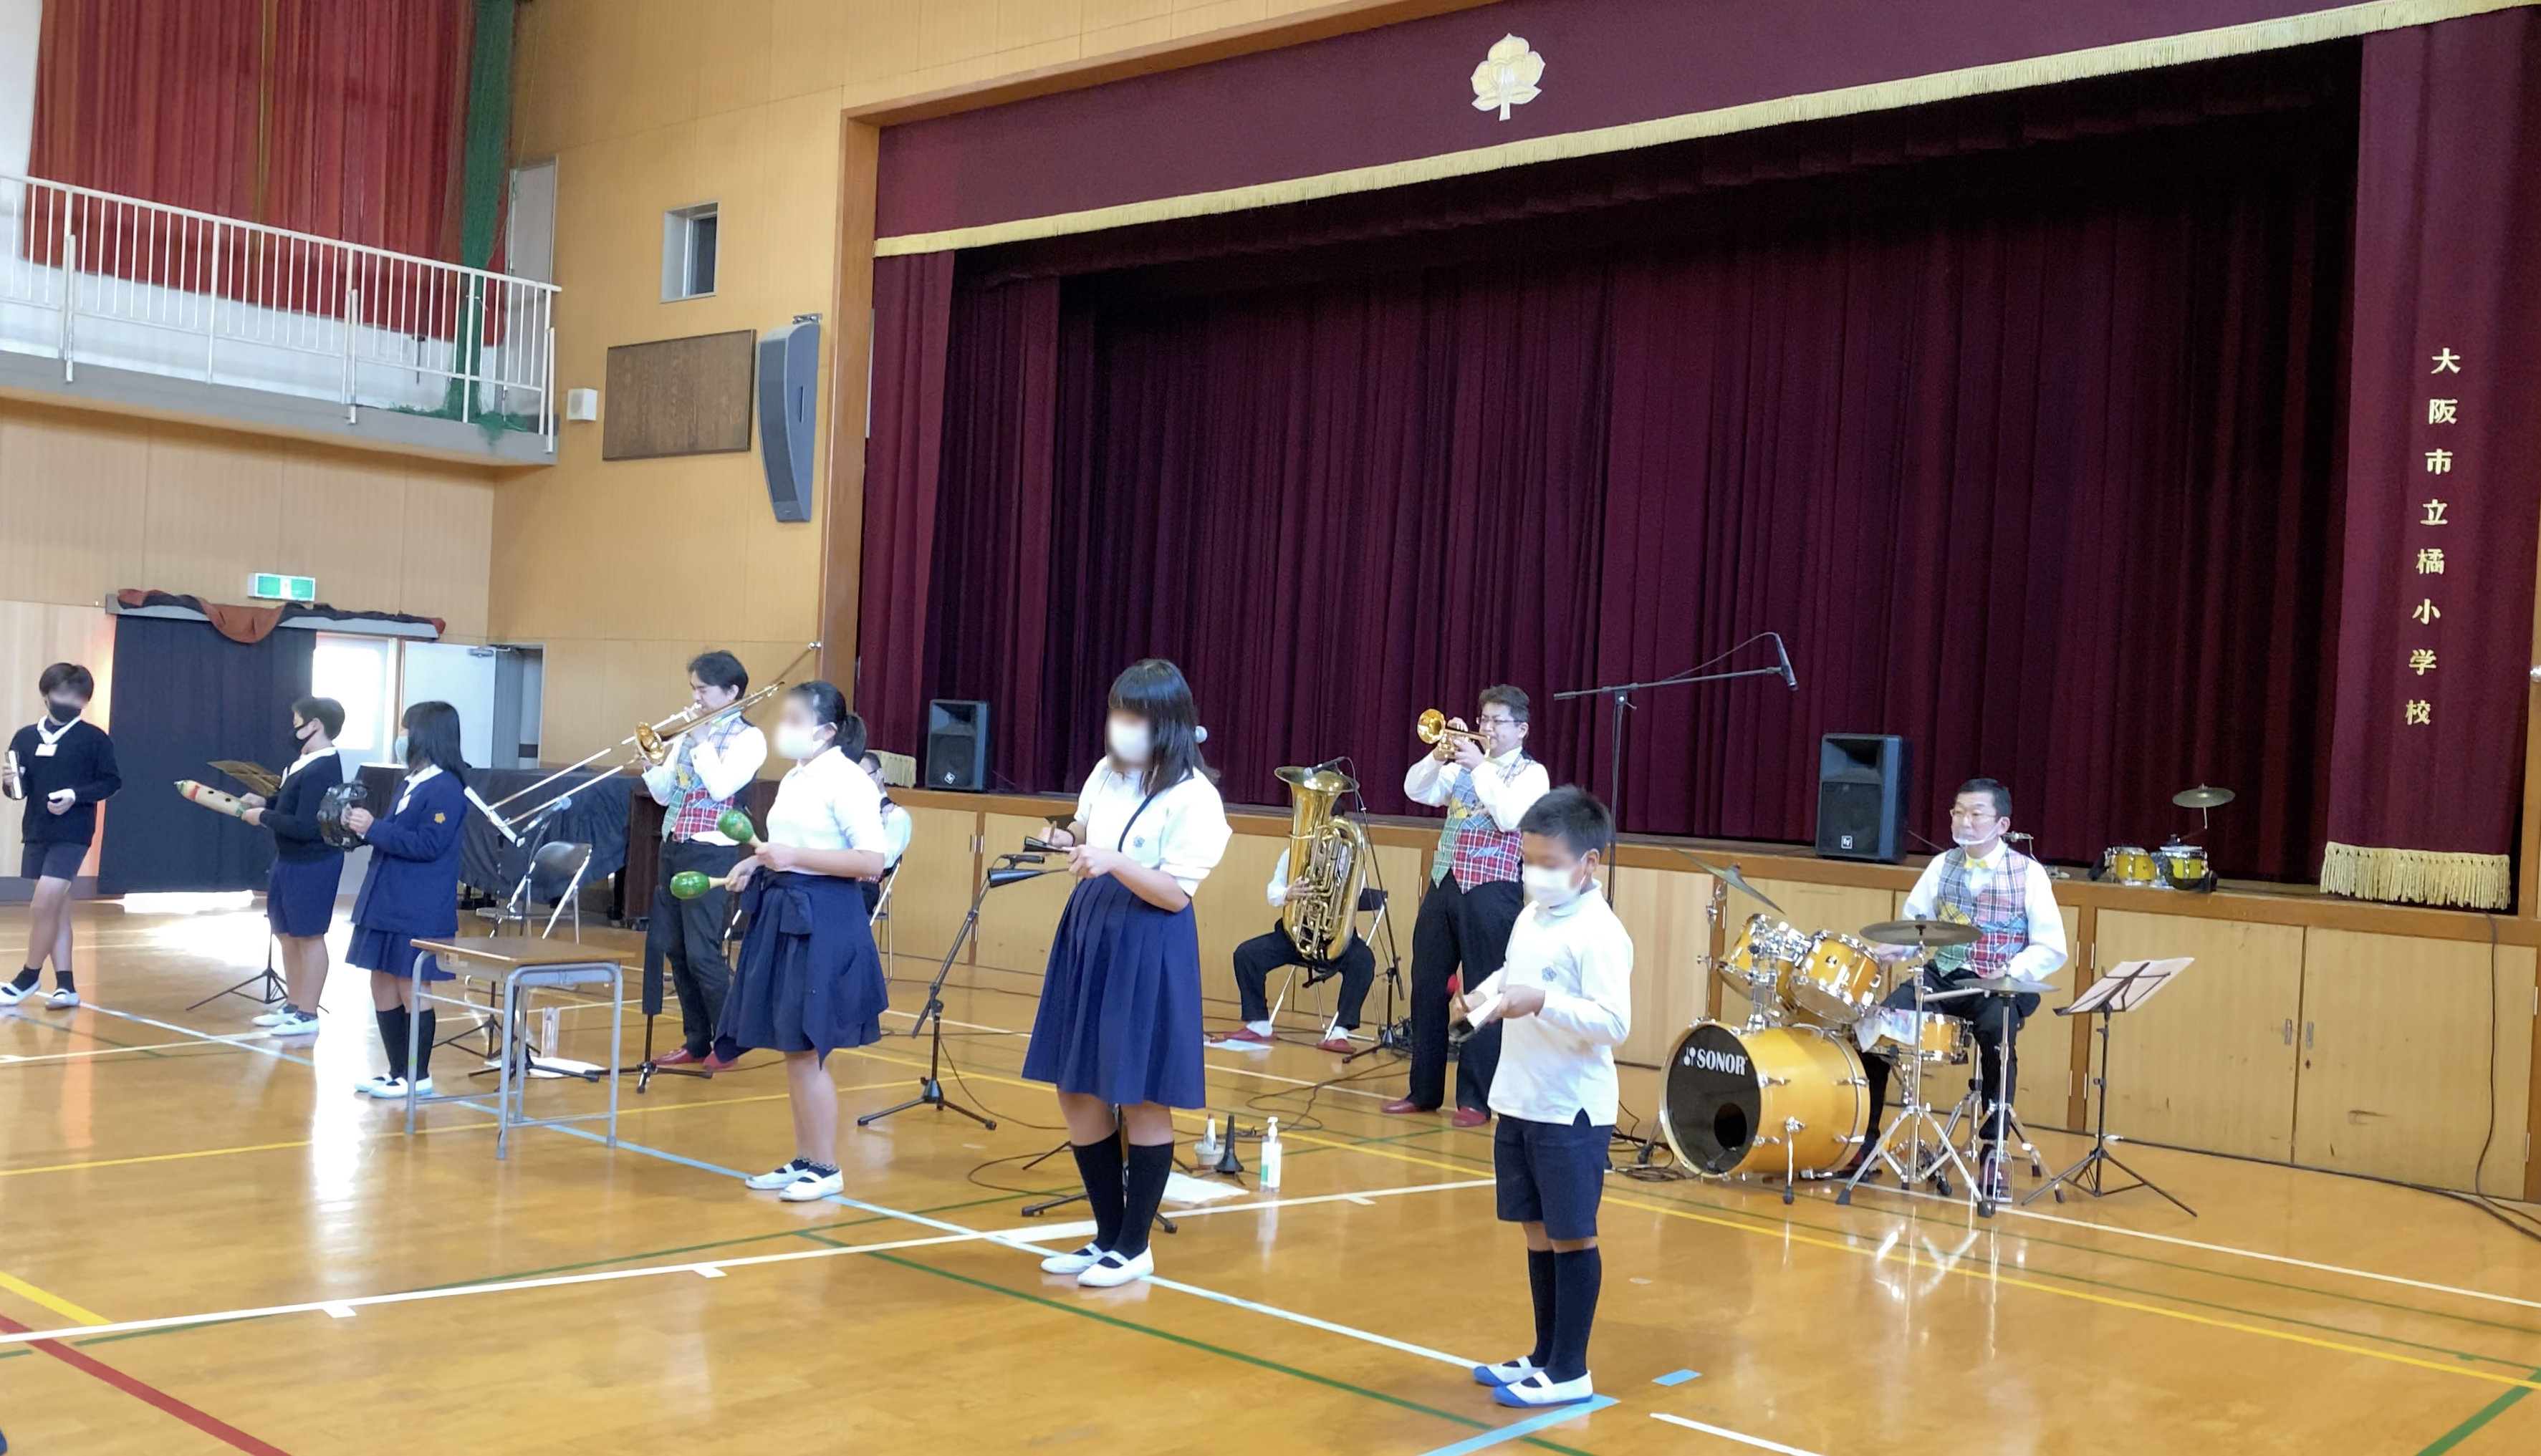 【実績更新】音楽鑑賞会 2020年11月大阪市立 橘小学校 追加しました。